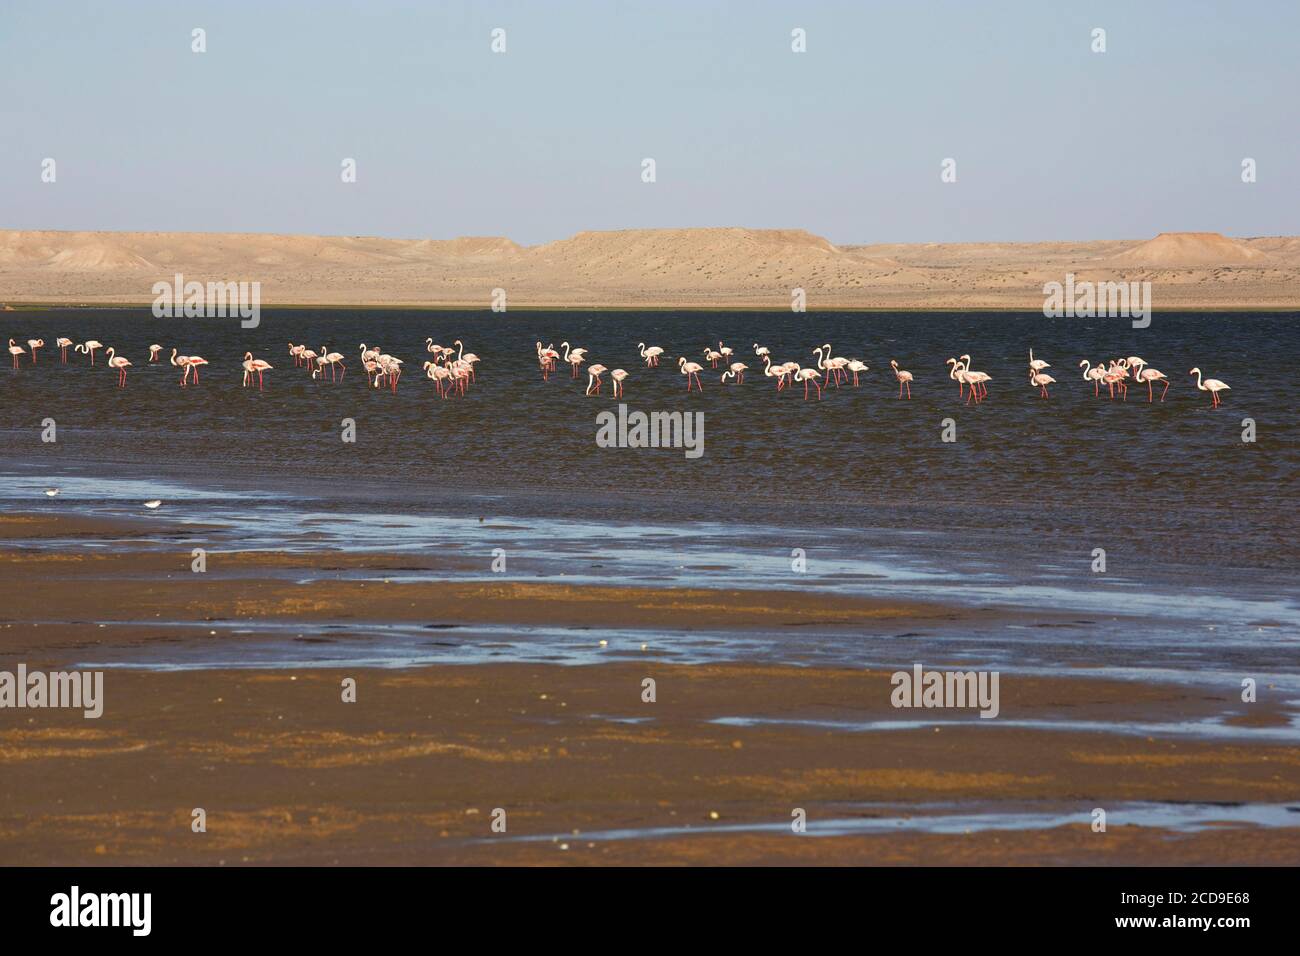 Maroc, Sahara occidental, Dakhla, flamants roses se reposant sur le lagon avec les montagnes désertiques en arrière-plan Banque D'Images